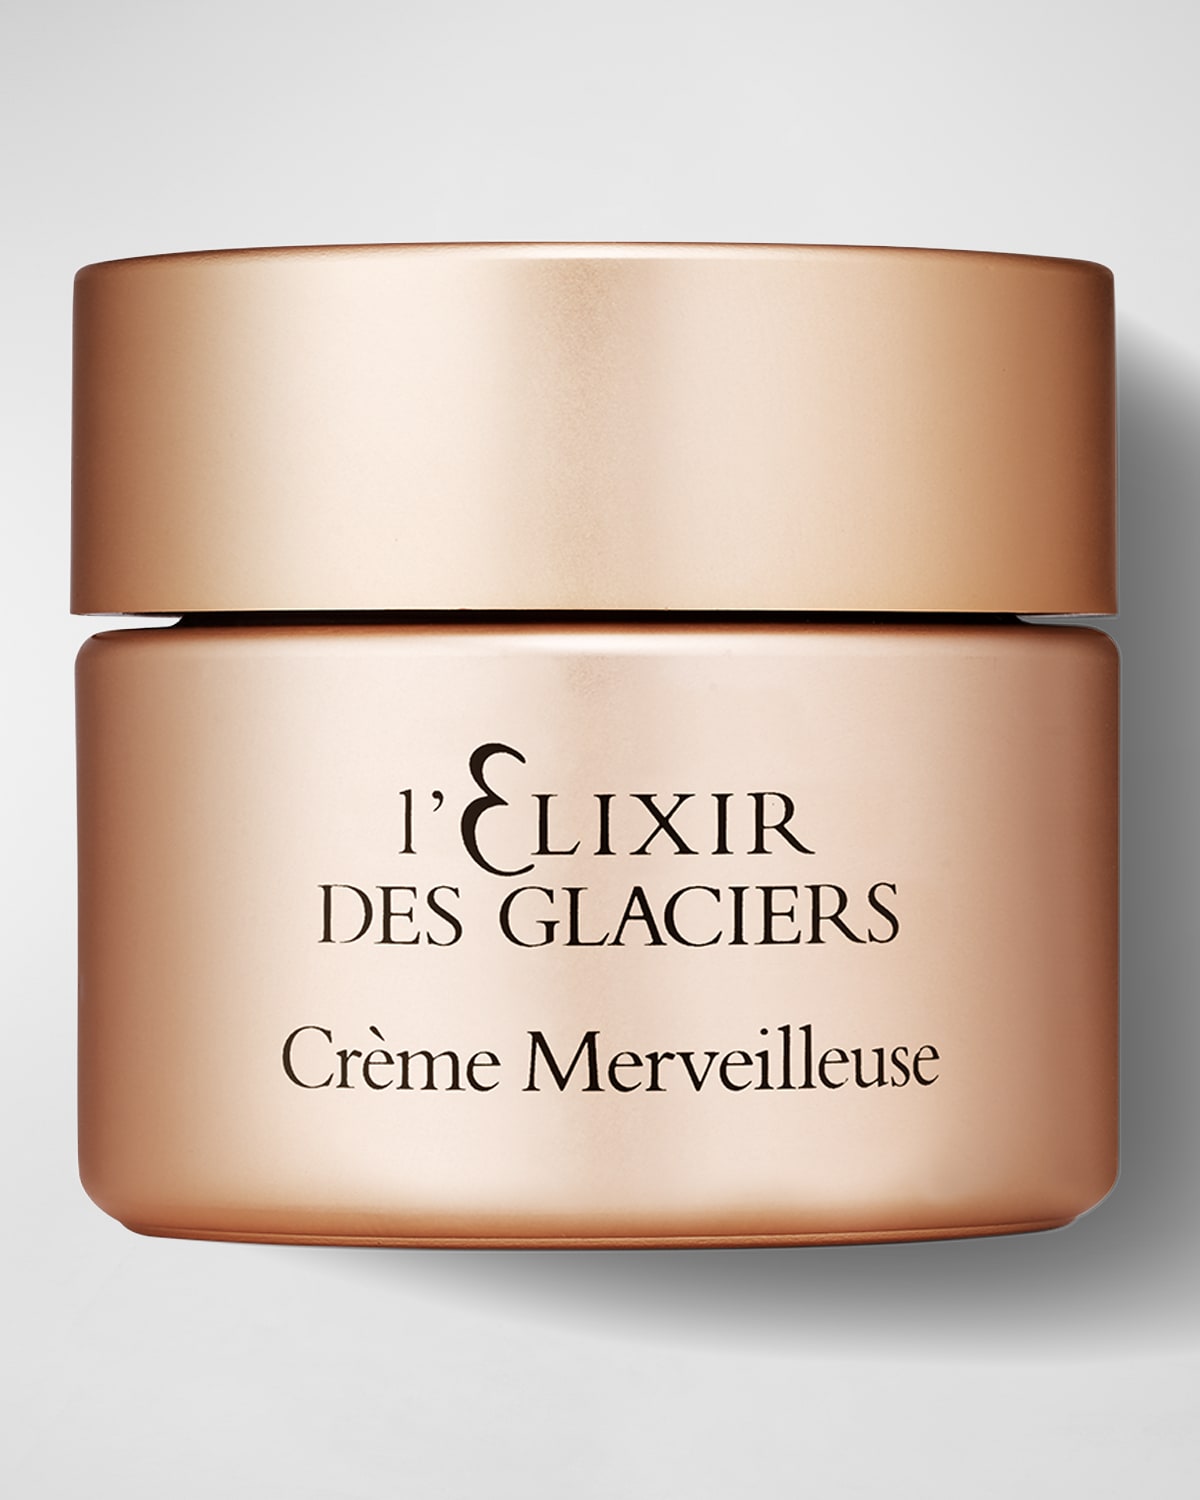 L'Elixir Des Glaciers Creme Merveilleuse Votre Visage, 1.7 oz.